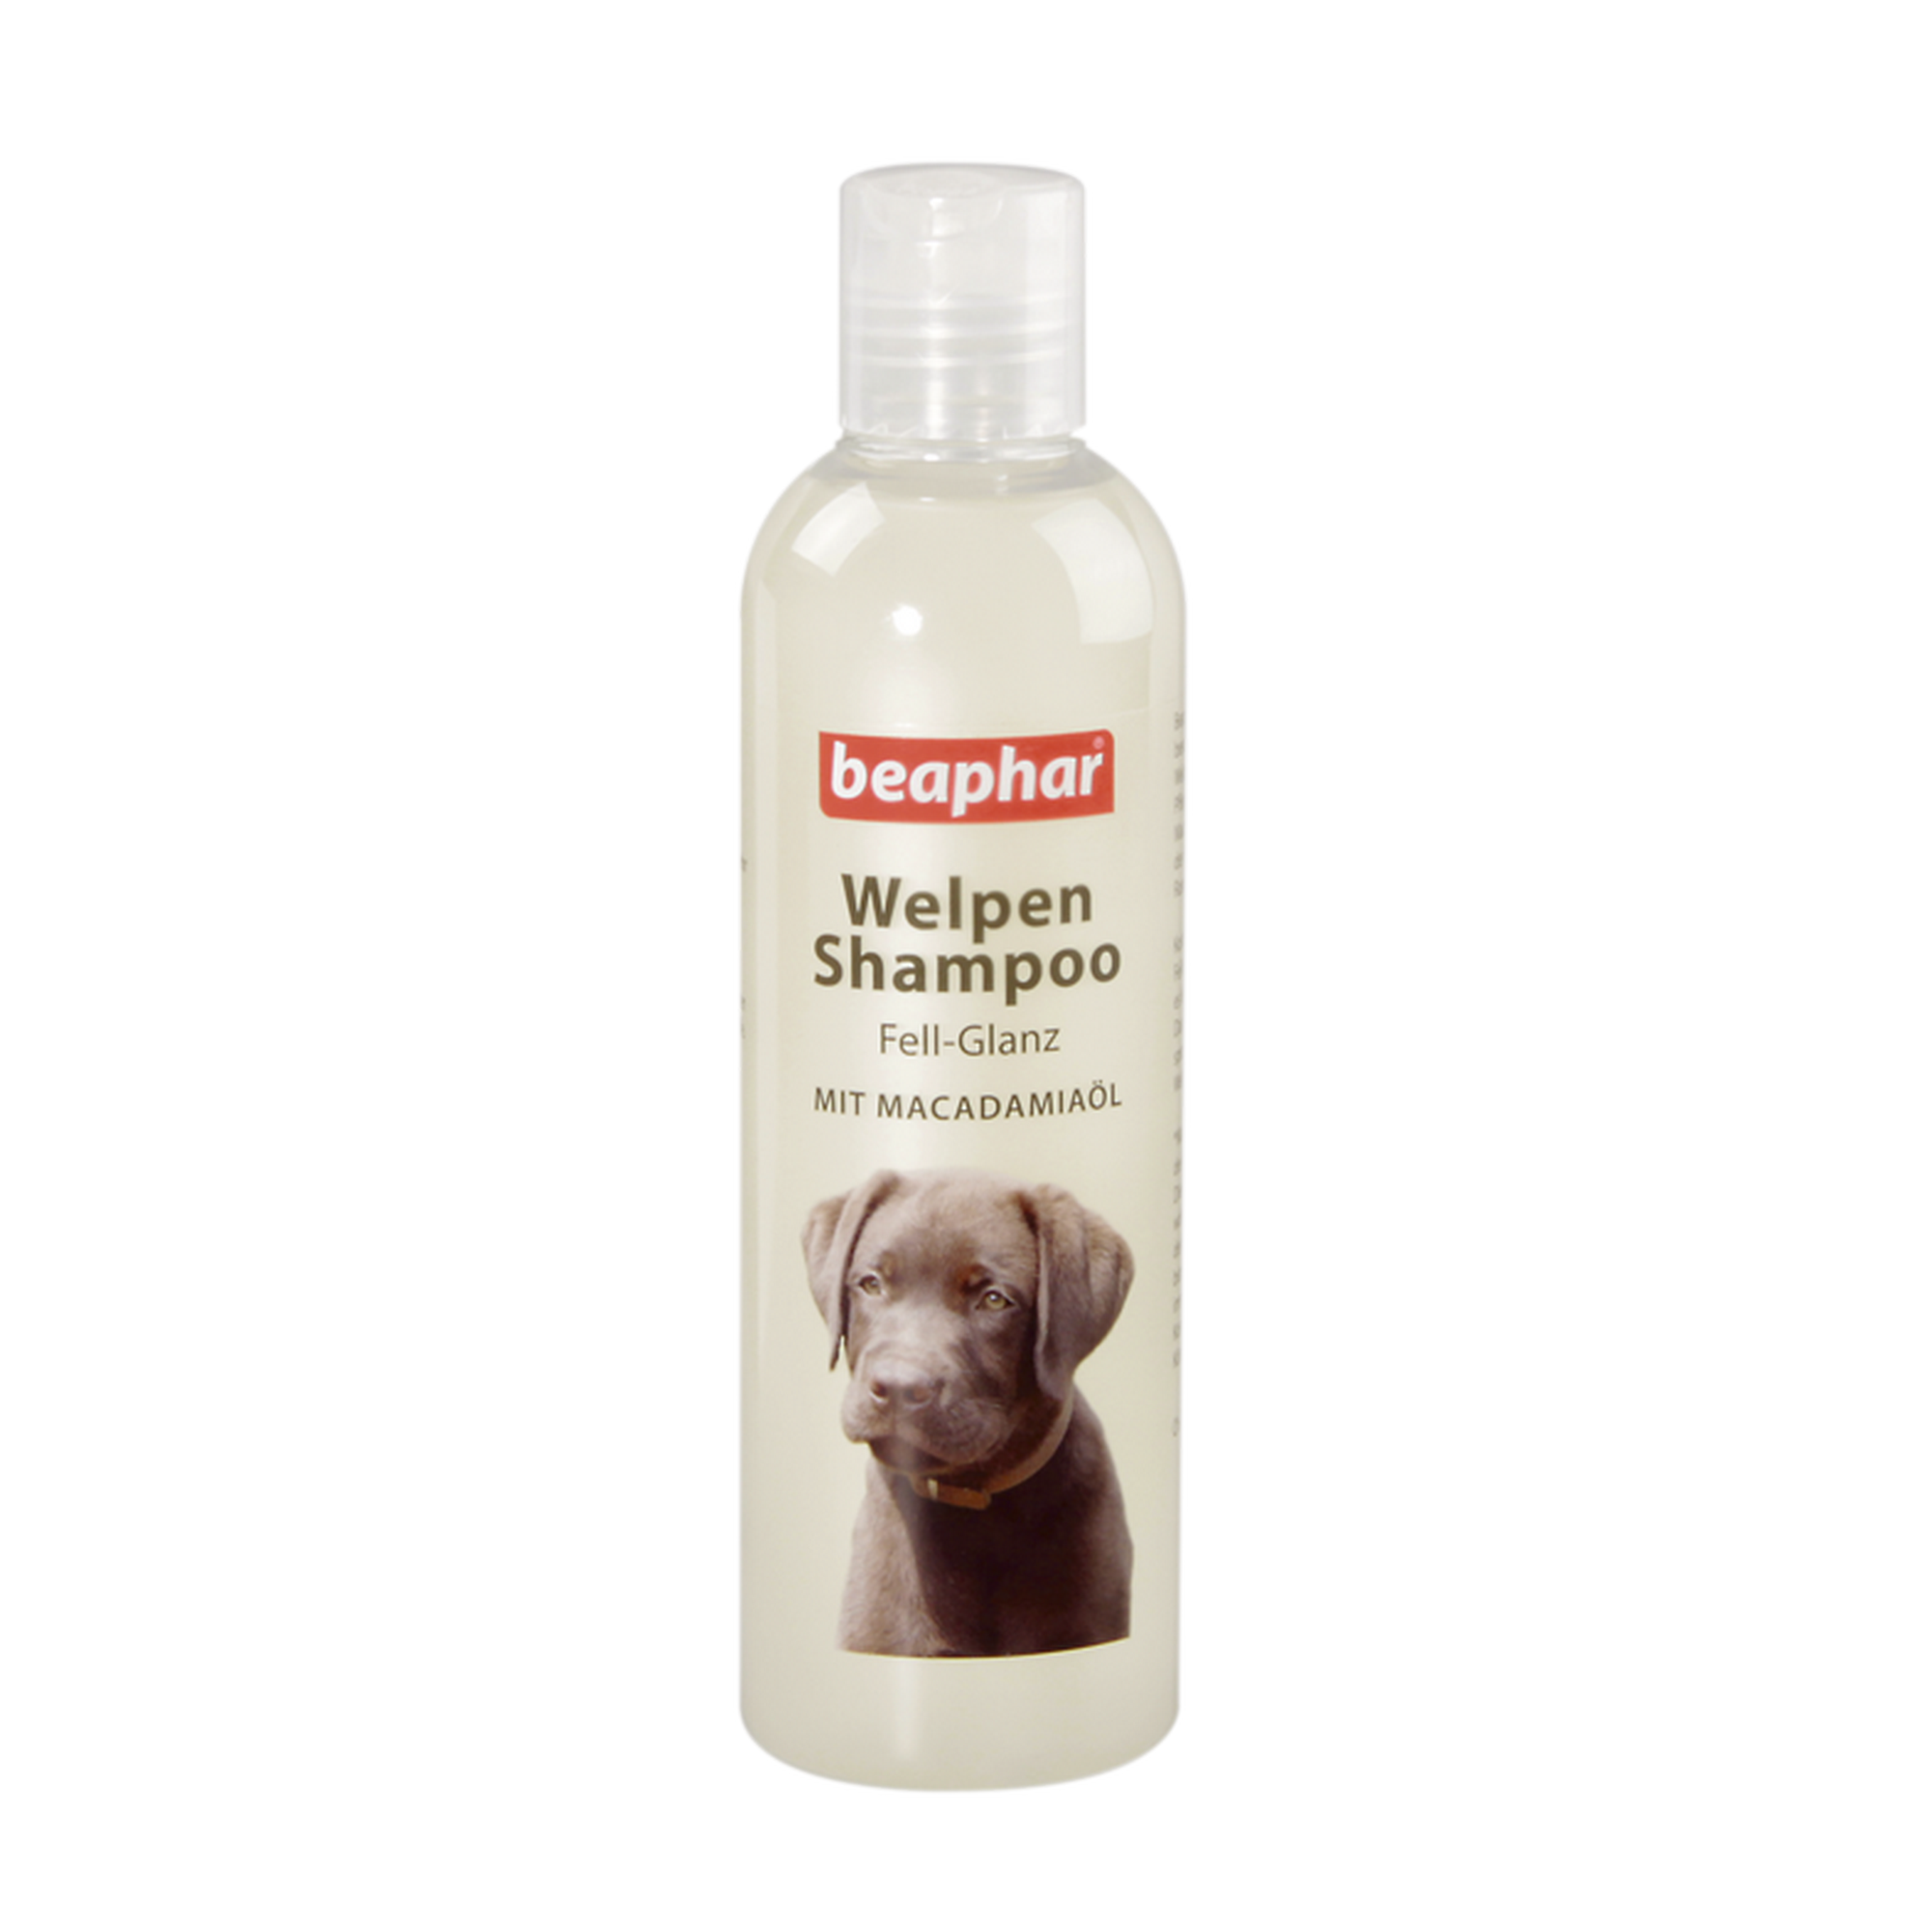 Welpen-Shampoo für glänzendes Fell 250 ml + product picture